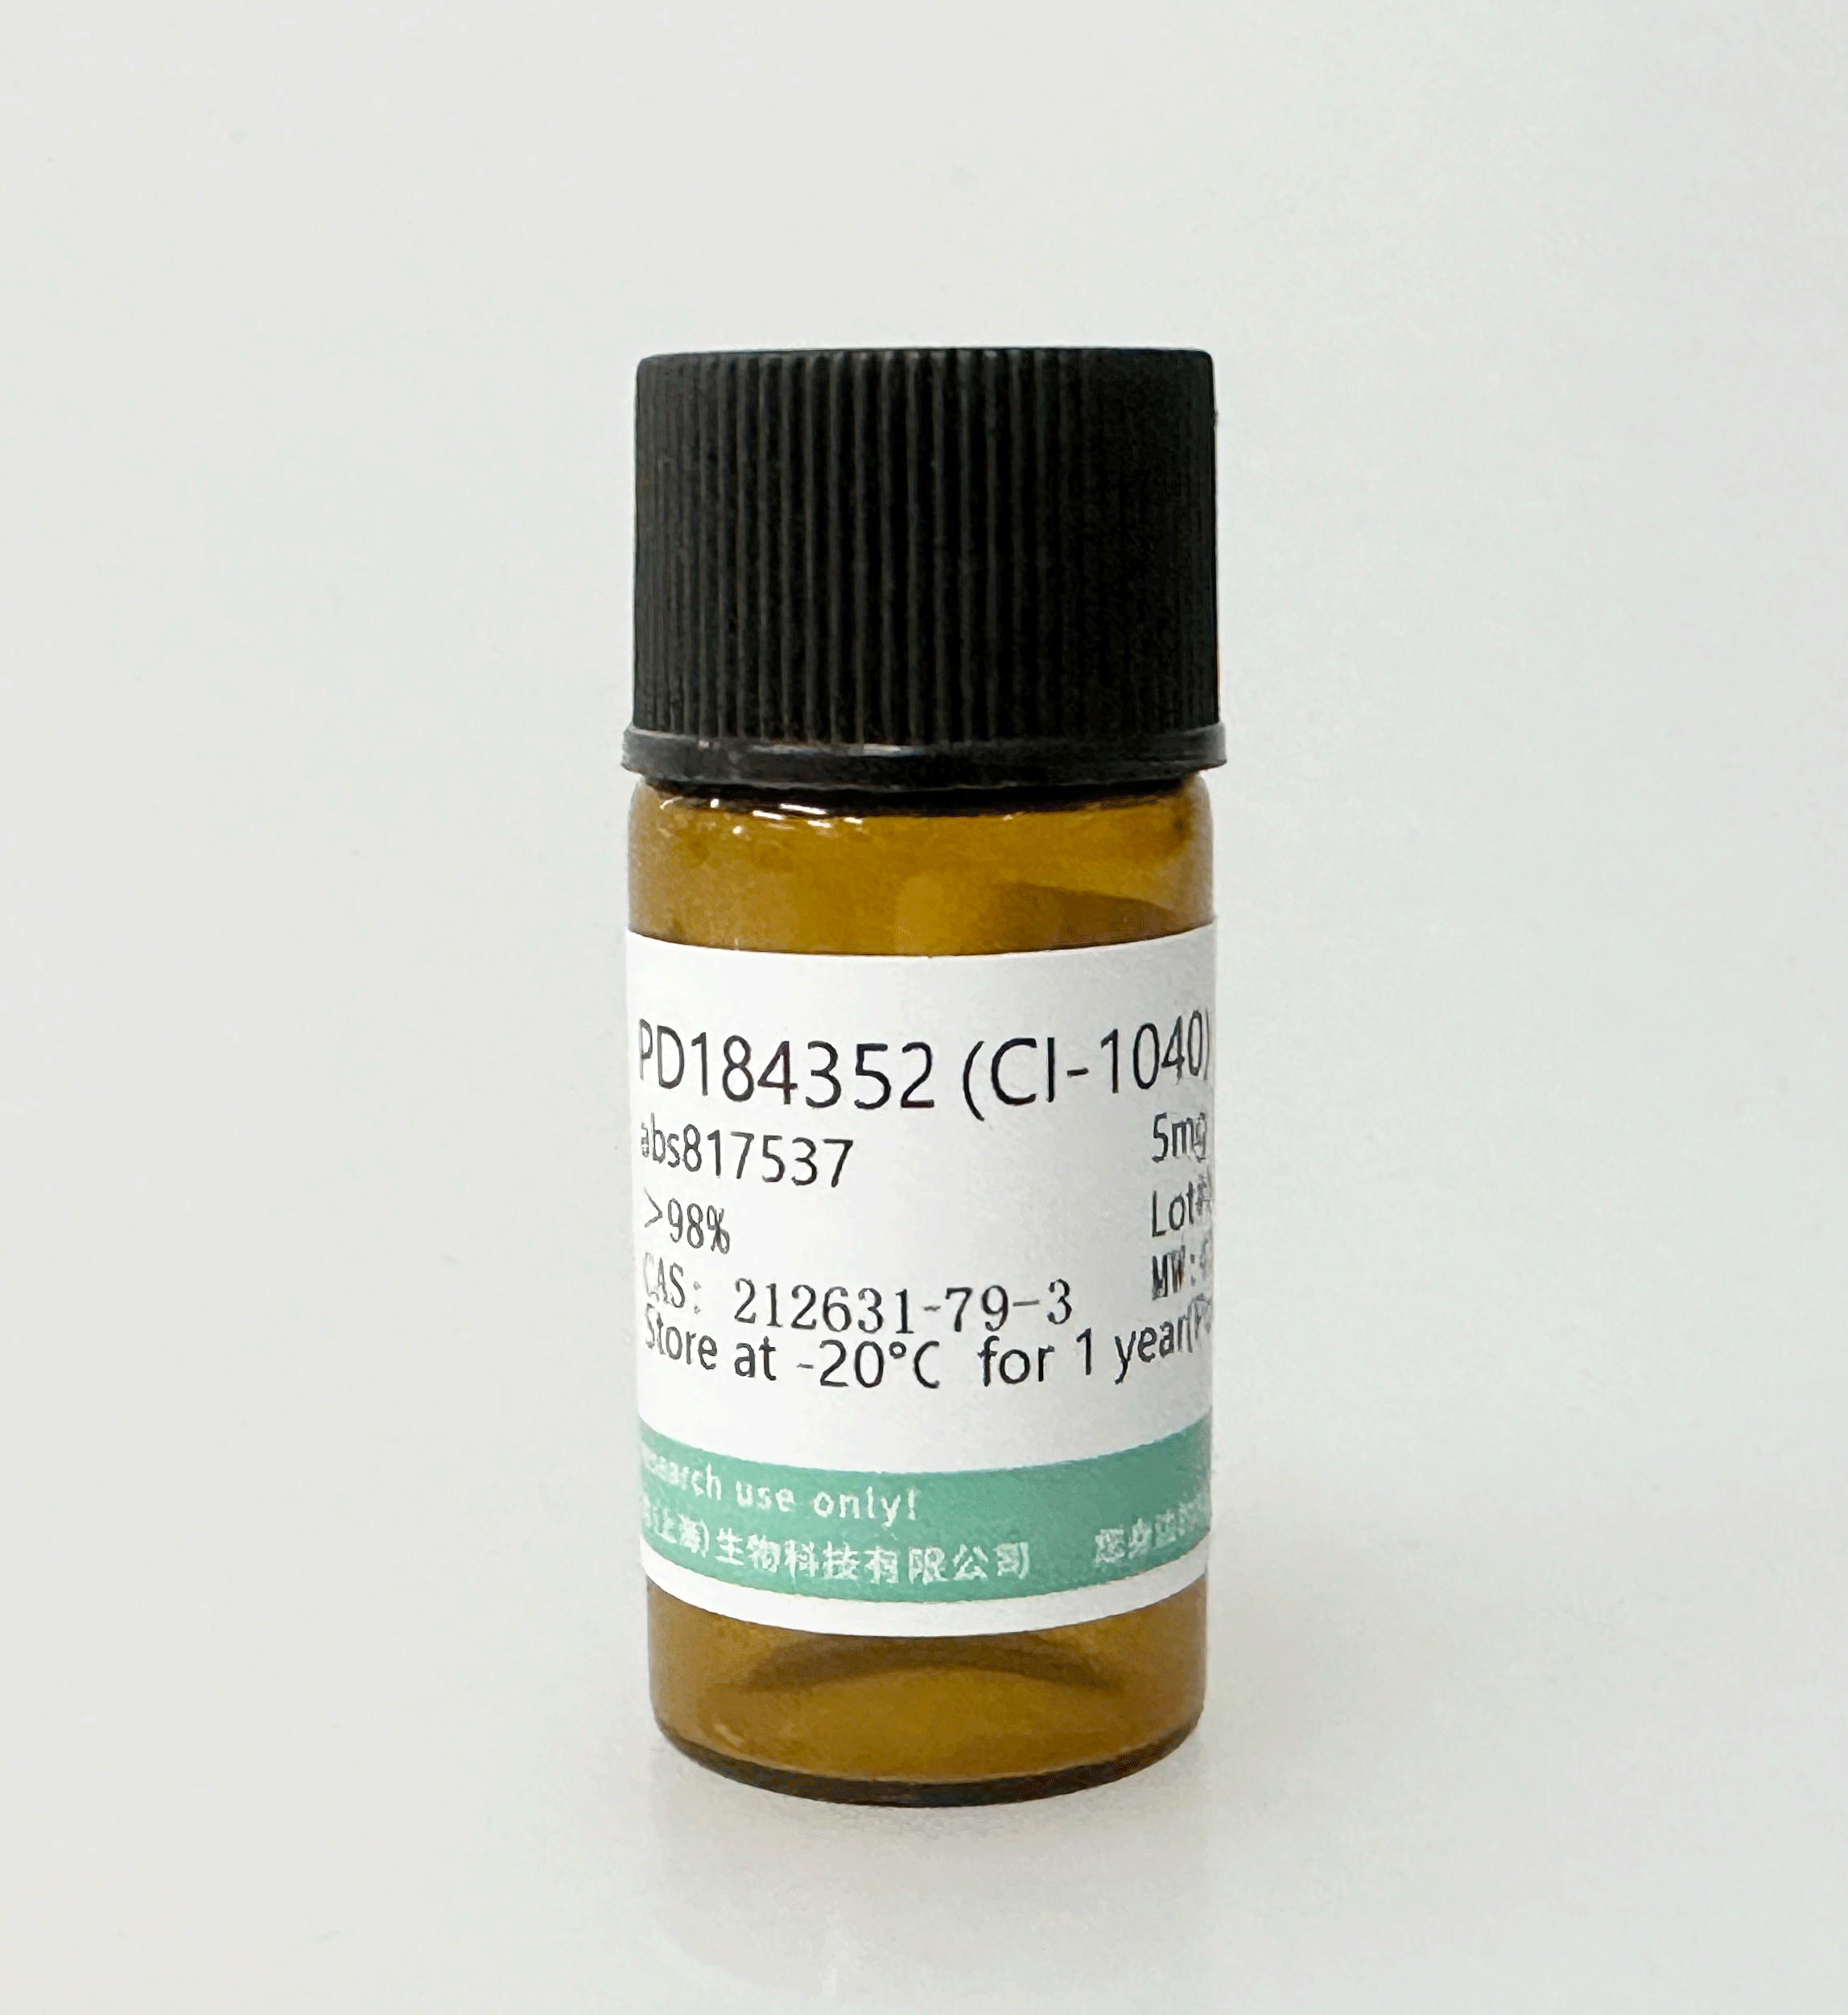 PD184352 (CI-1040)